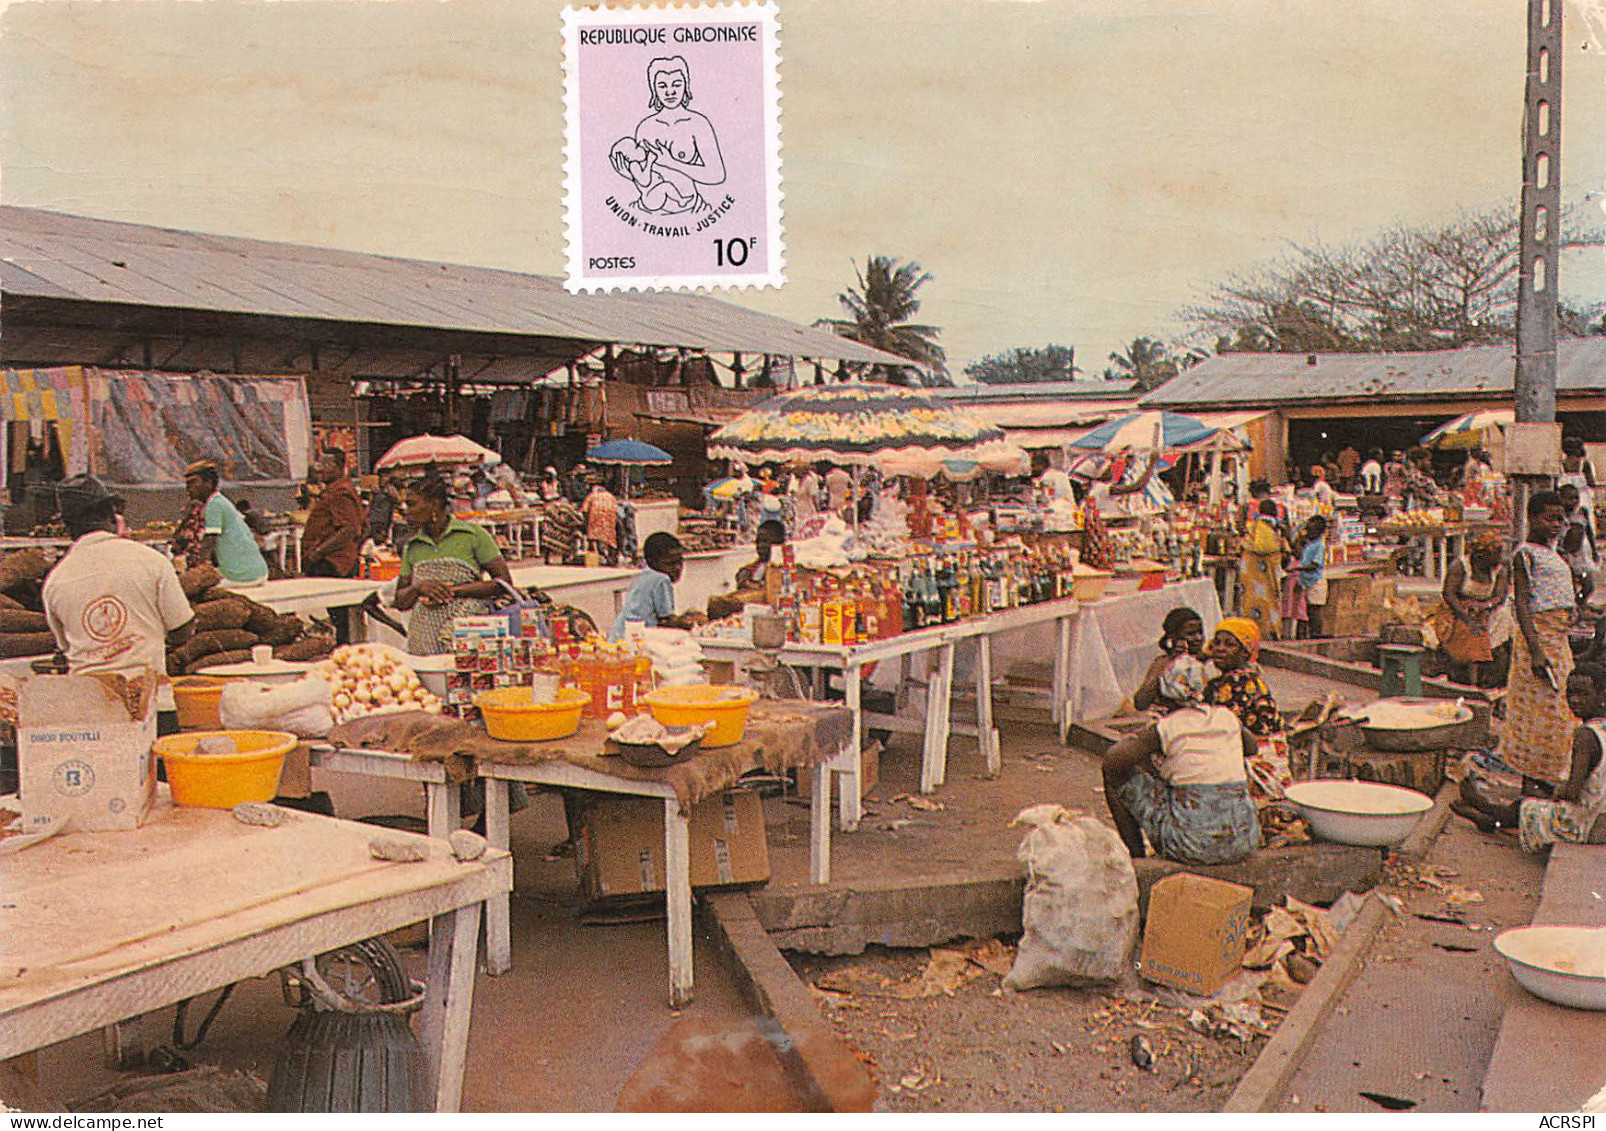 GABON PORT-GENTIL  Le Marché De Grand Village  édition Tropic  (Scan R/V) N° 27 \MP7163 - Gabon